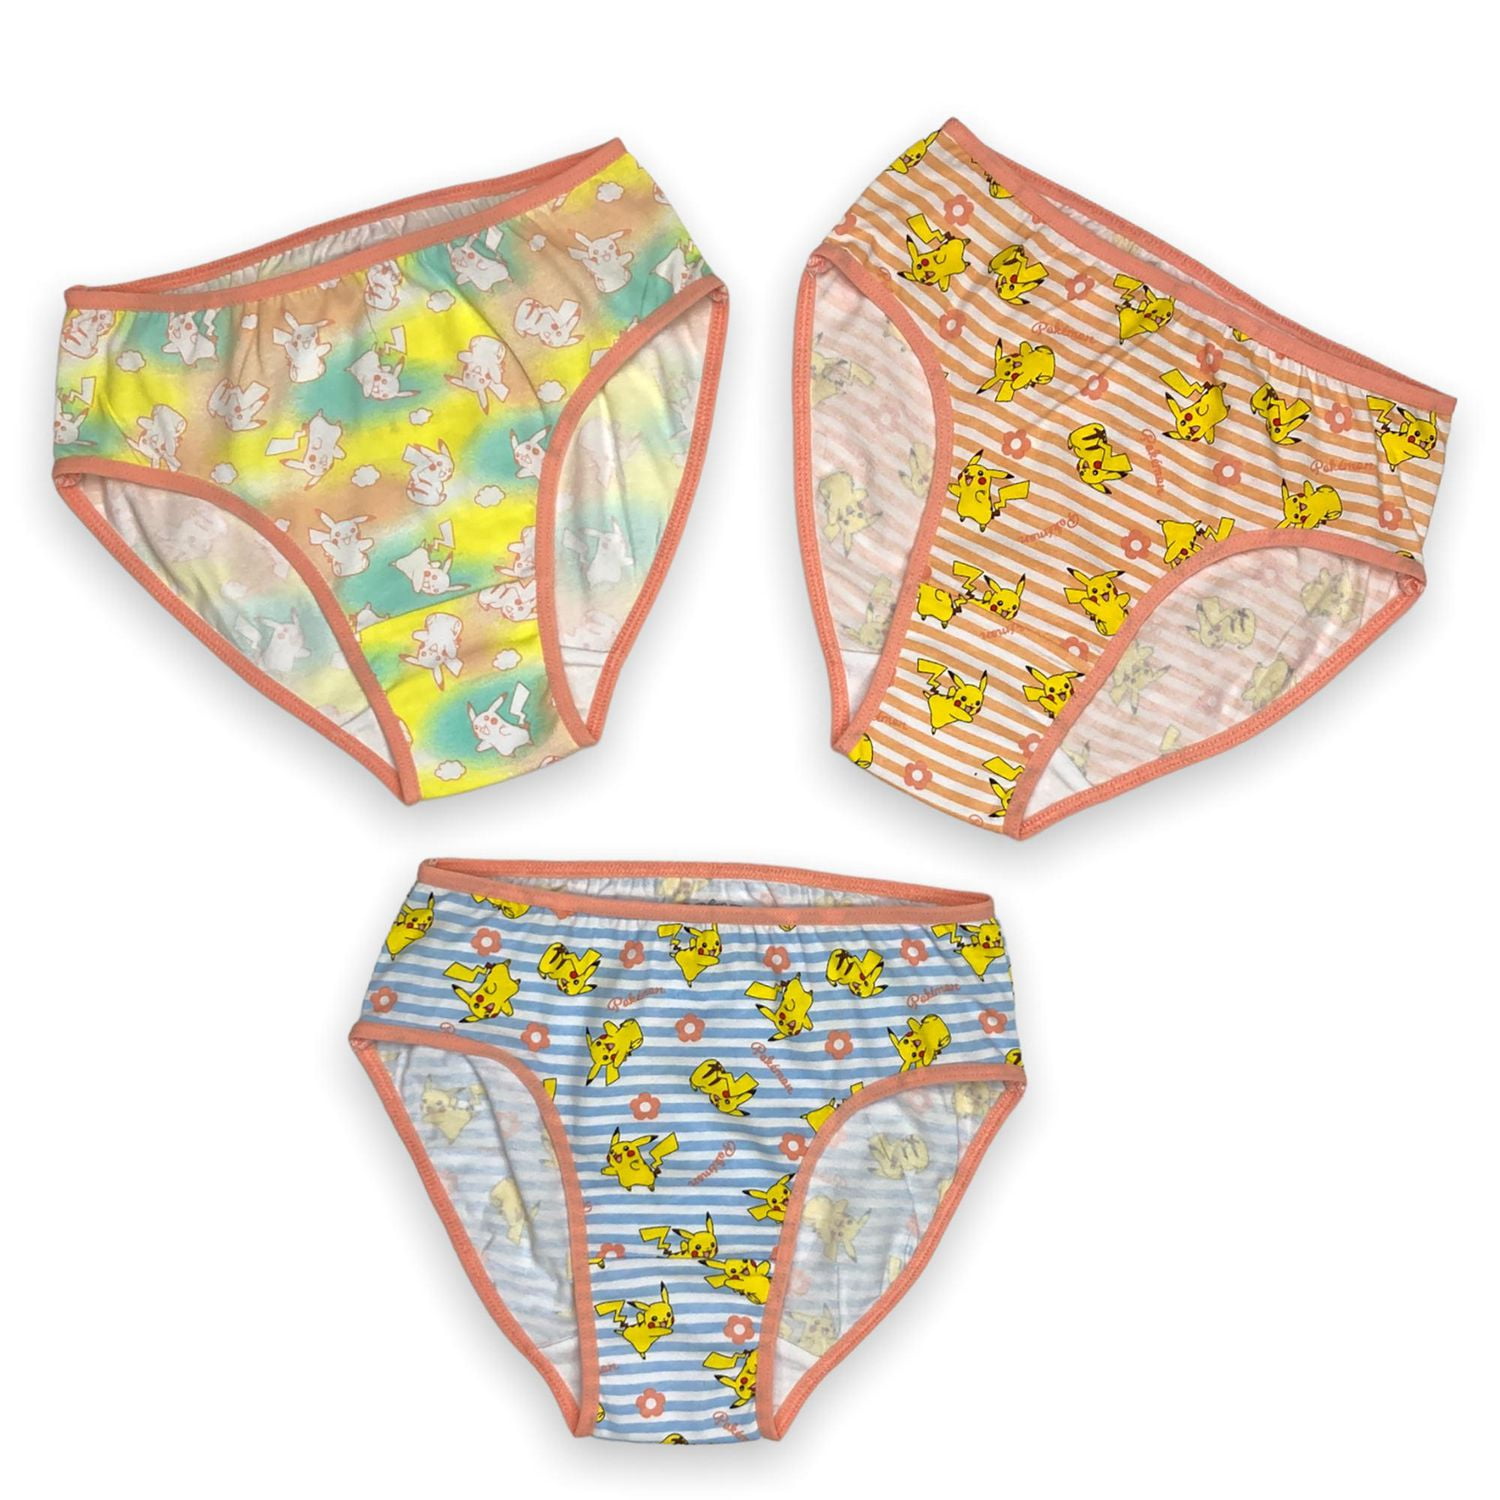 NEW Girls Baby Children Kids Cloe Cute Pantie Underwear Undies Bottoms  2-4years